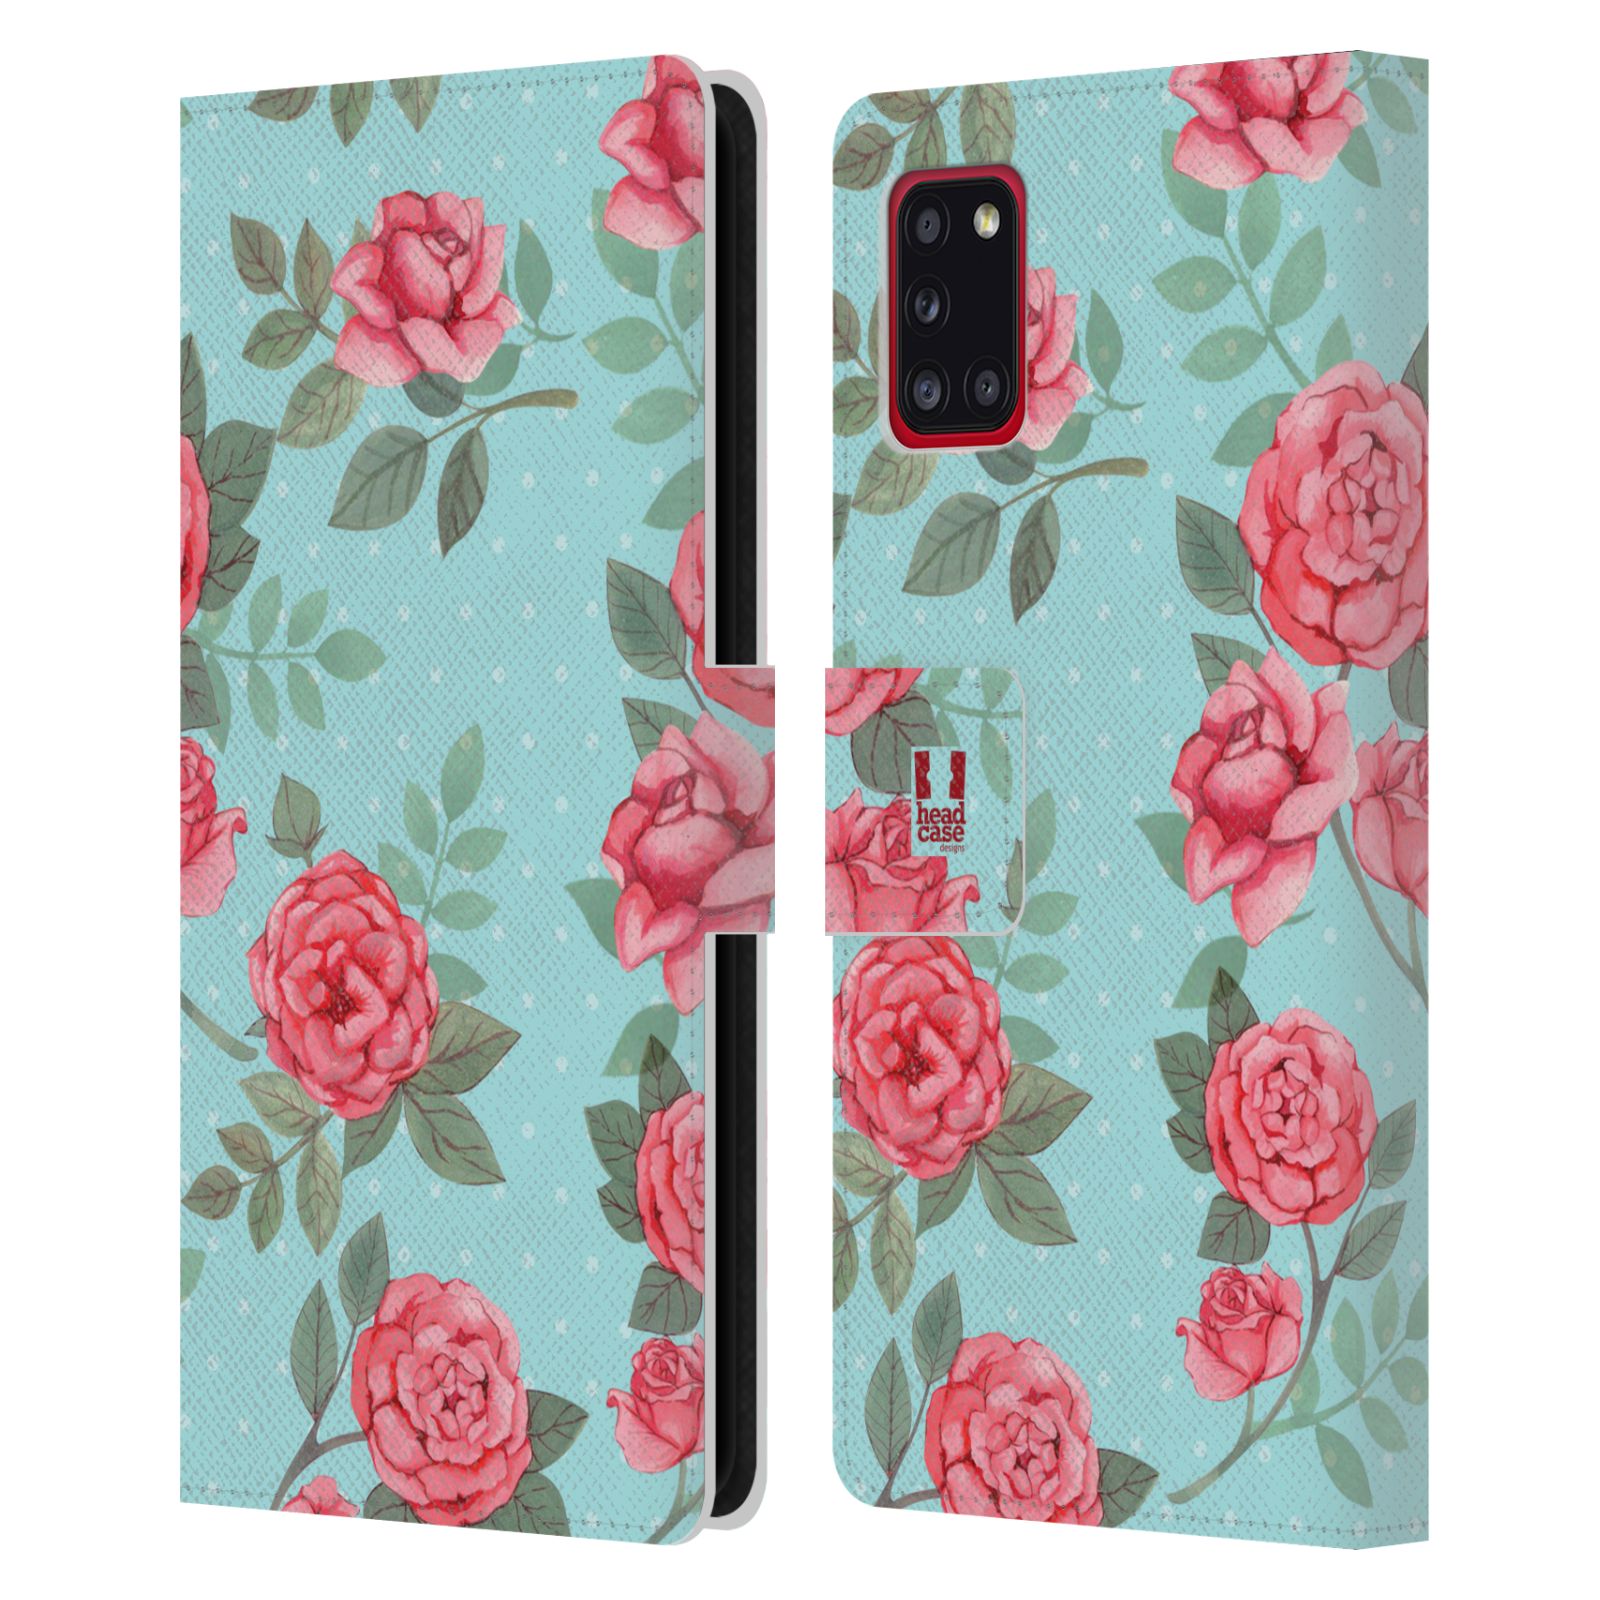 Pouzdro HEAD CASE na mobil Samsung Galaxy A31 romantické květy velké růže modrá a růžová